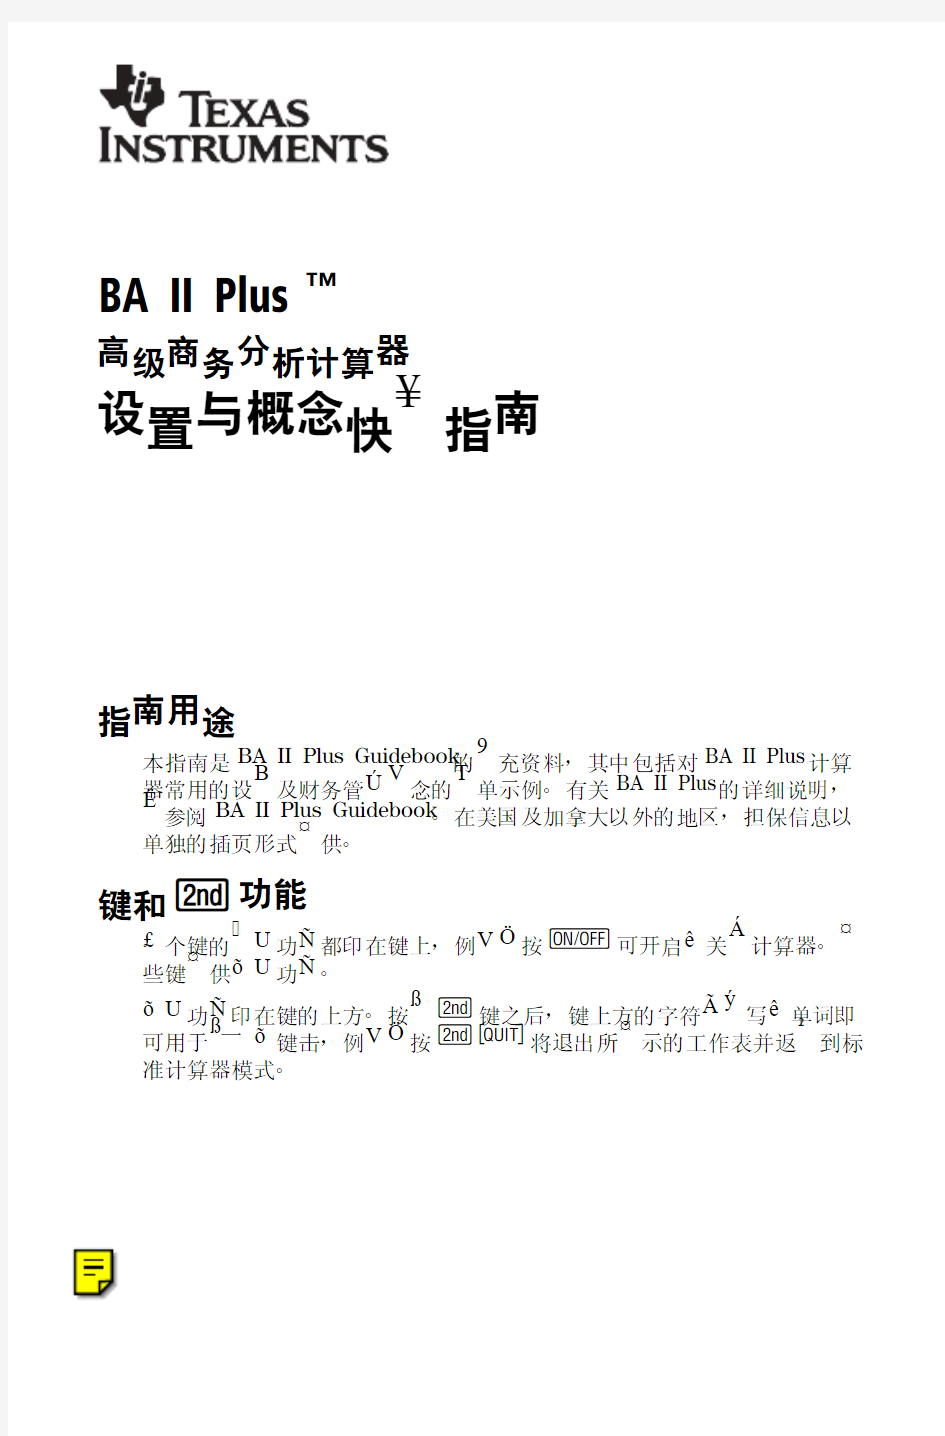 CFA 金融计算器 BAII PLUS(德州仪器)中文使用说明